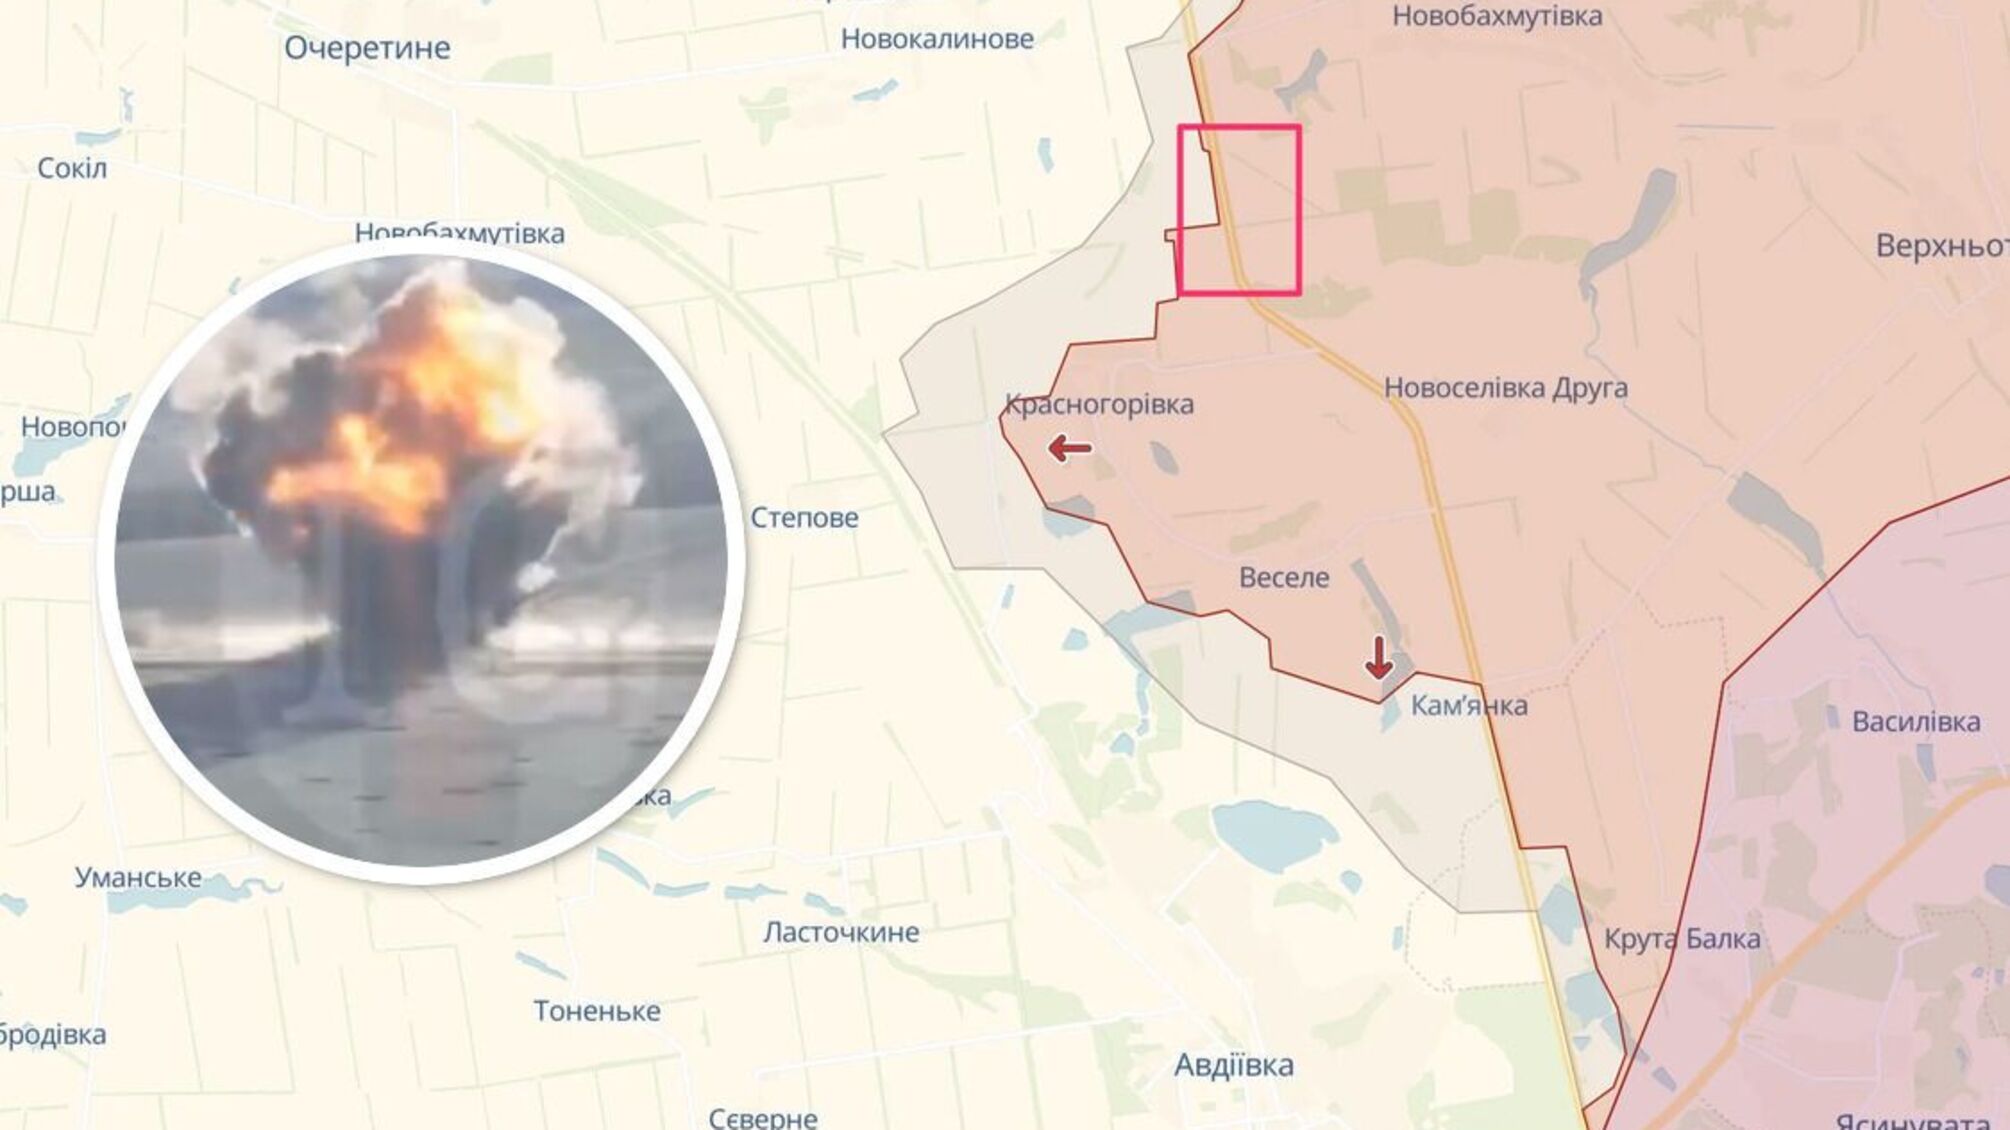 Бойцы спецподразделения 'Омега' уничтожили тайник с российскими противотанковыми минами под Авдеевкой (видео)